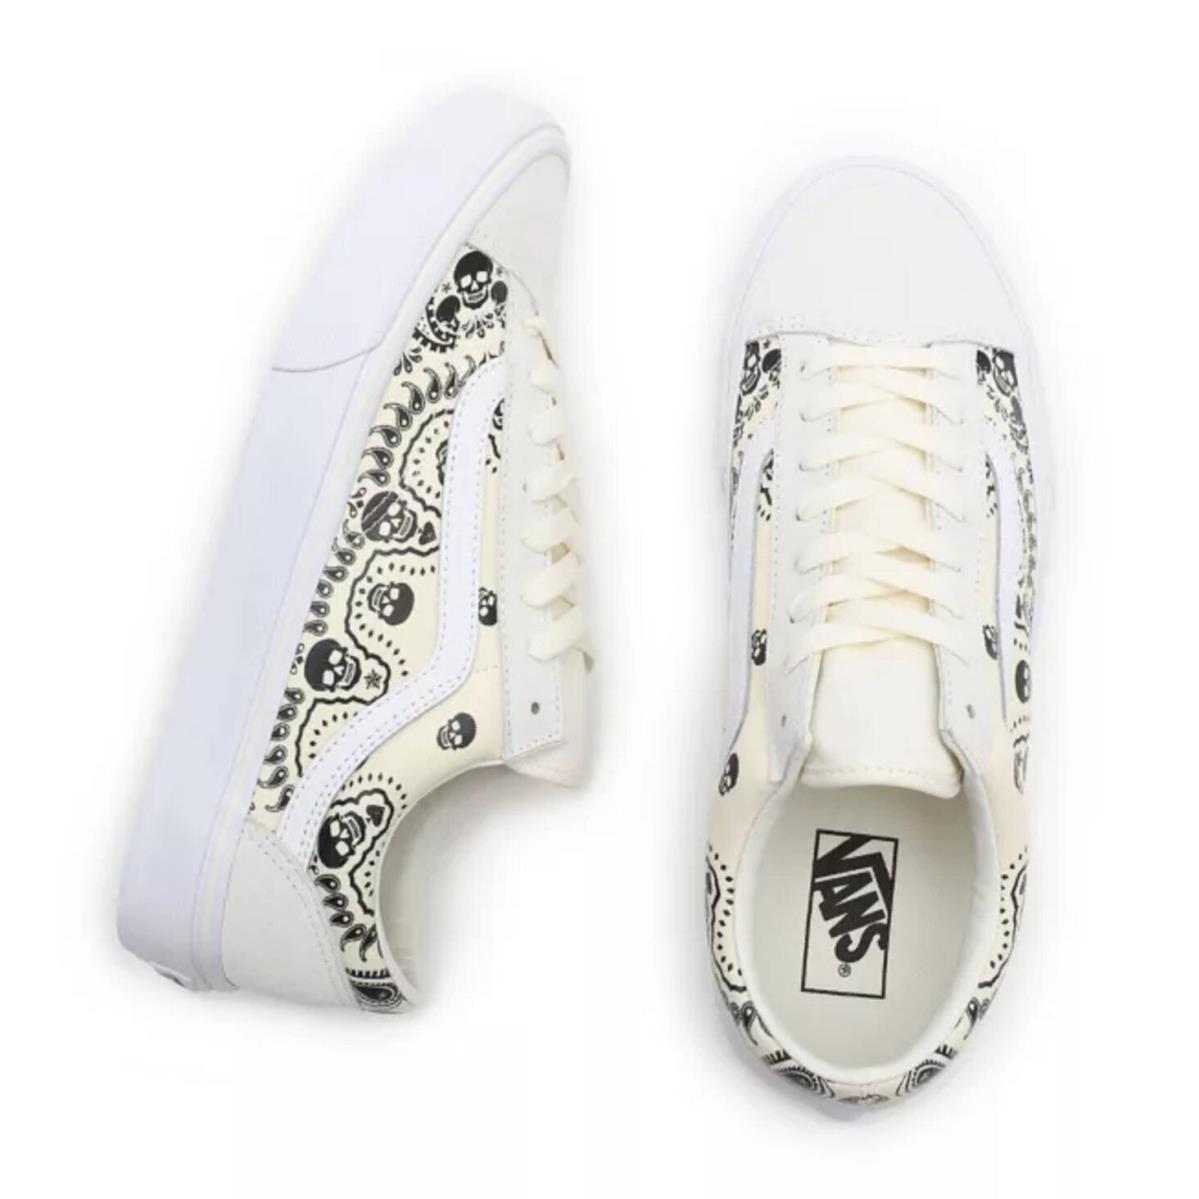 Vans shoes  - White 2